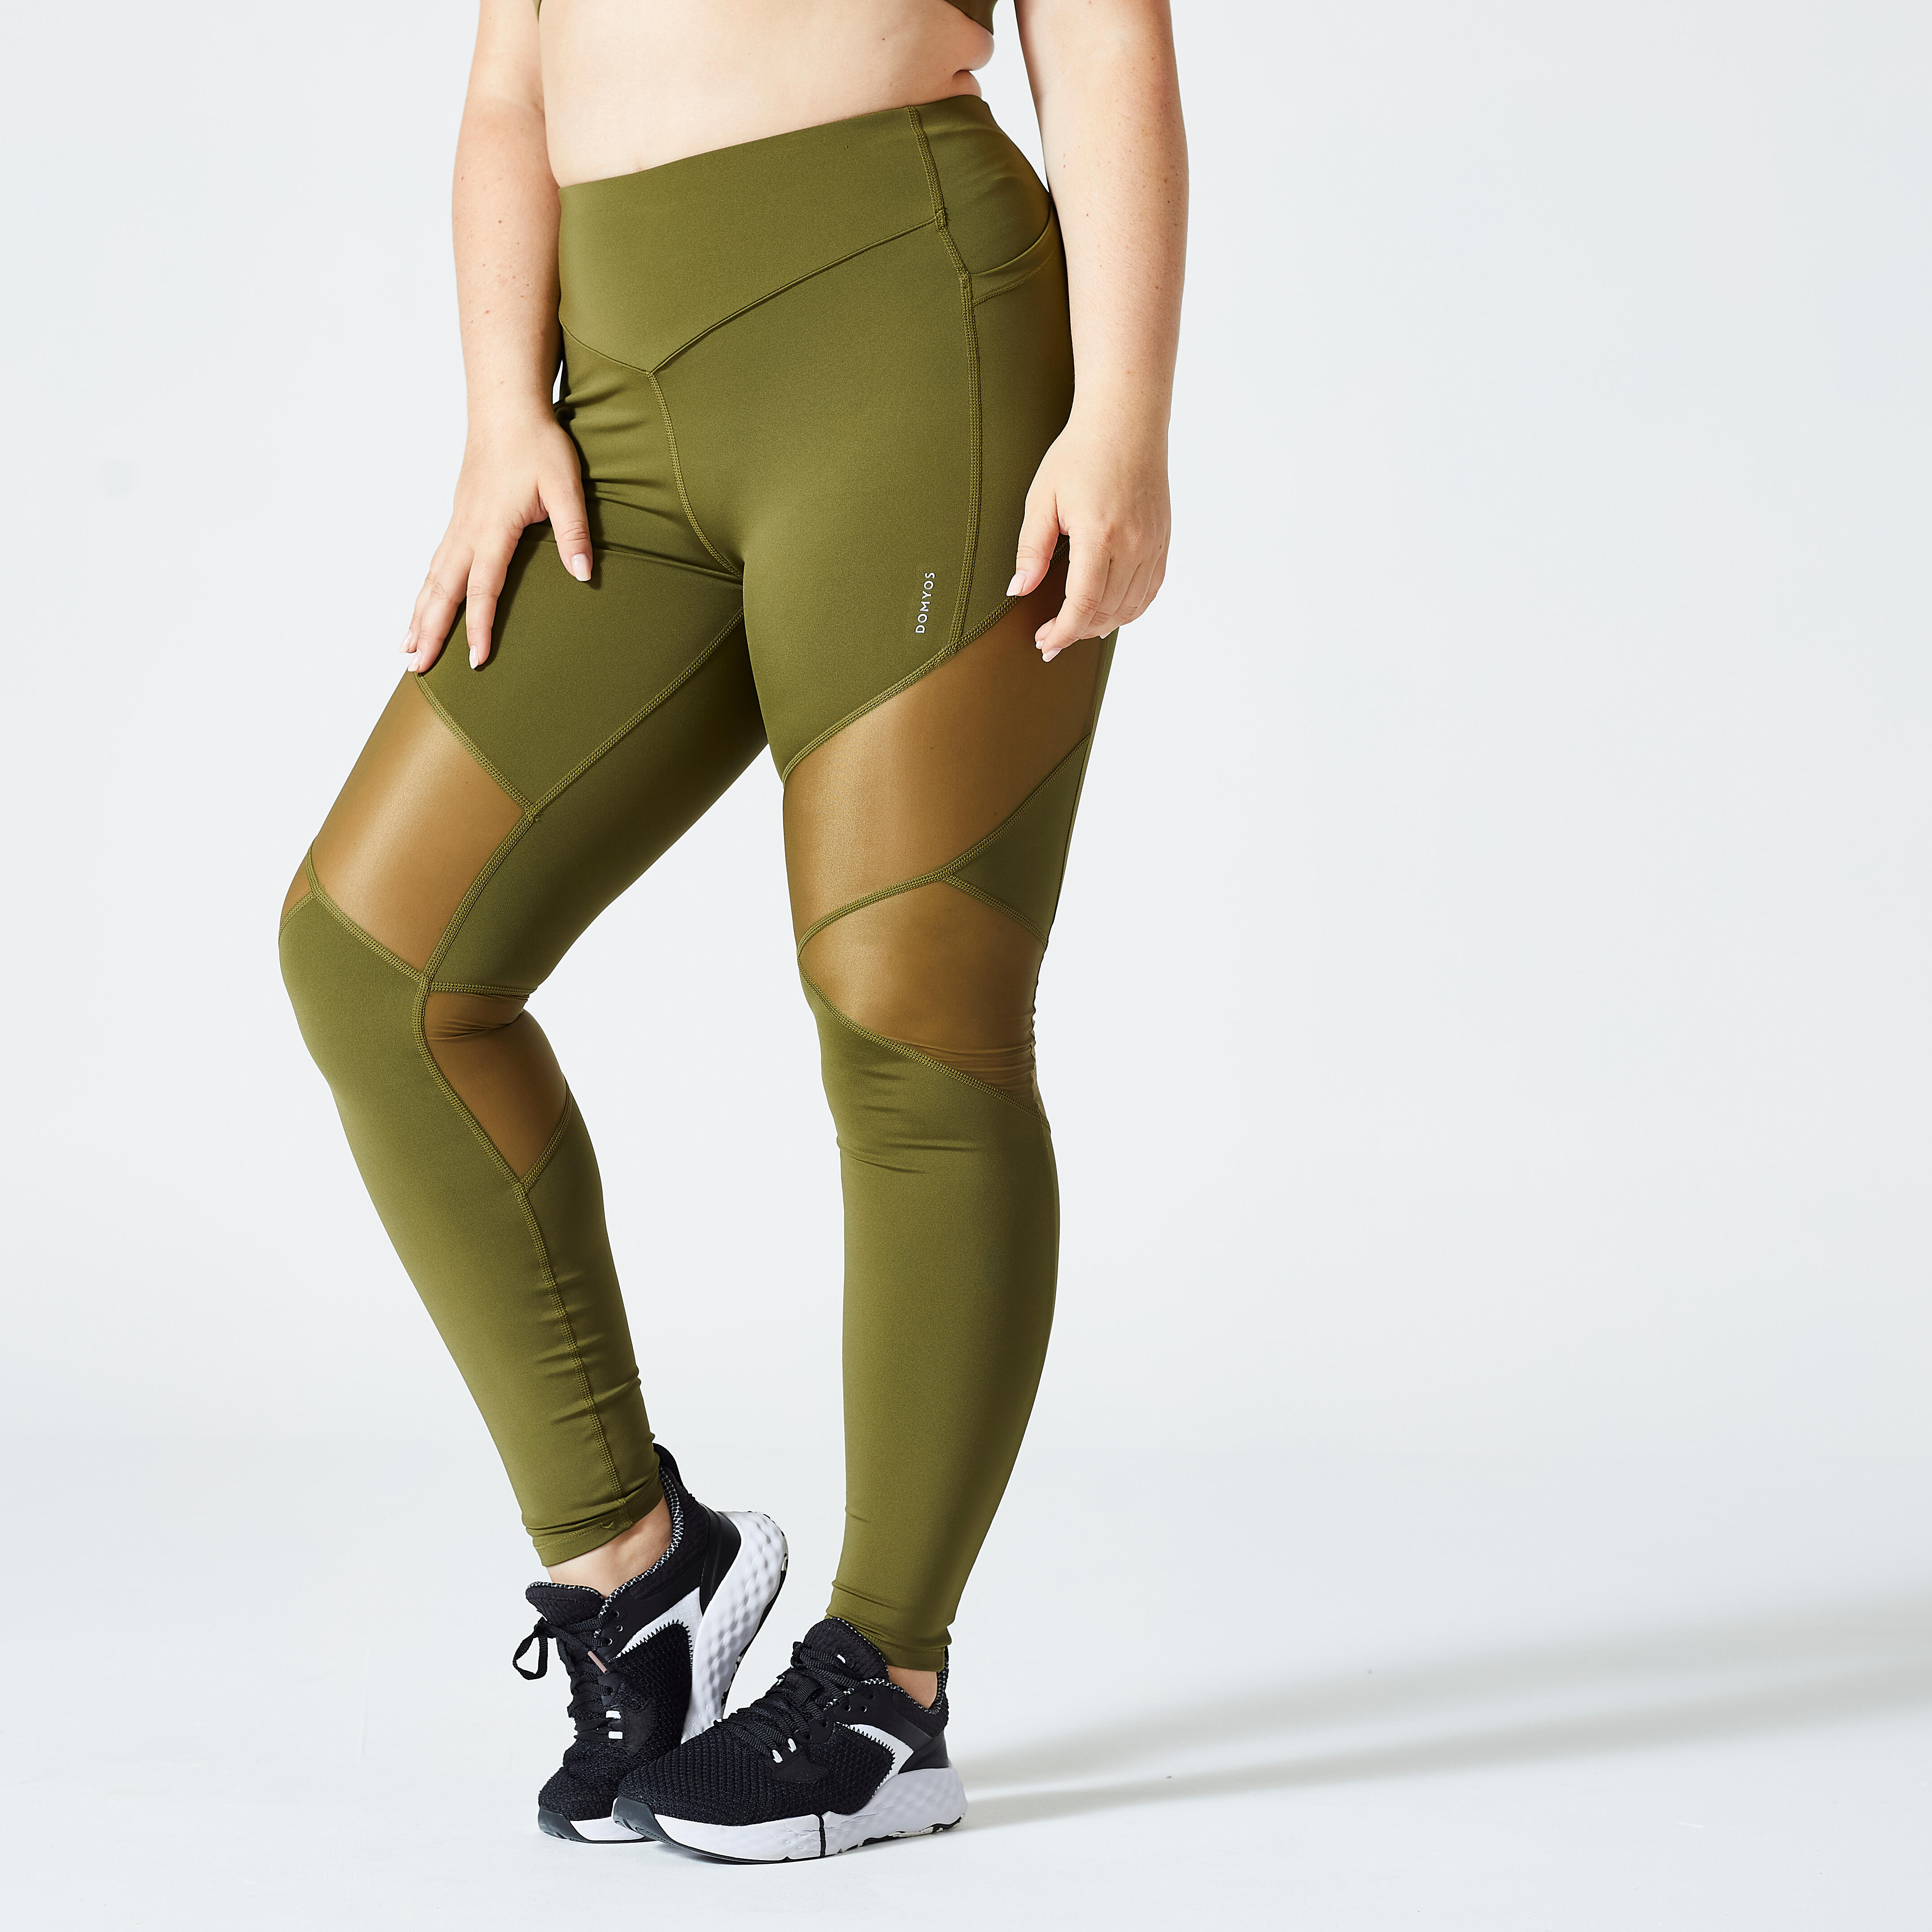 Discover decathlon nike leggings latest -